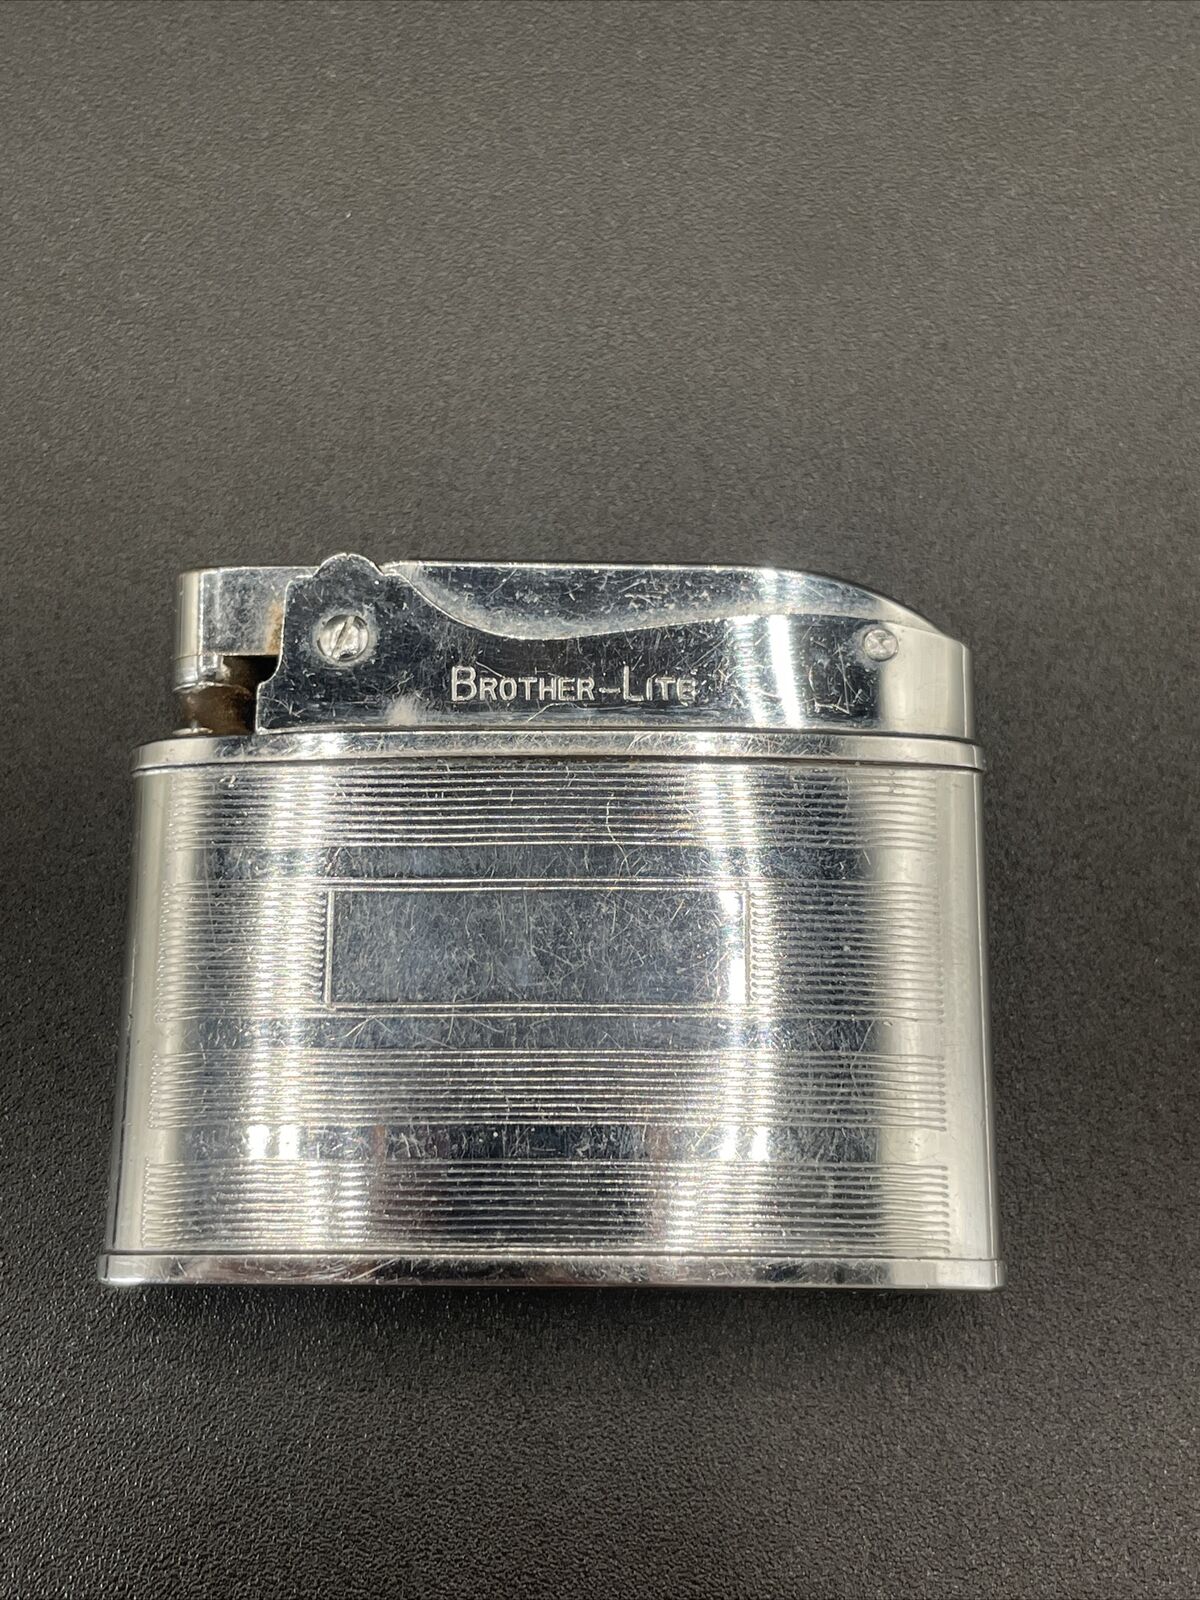 Vintage Brother-Lite Japan Gas Lighter